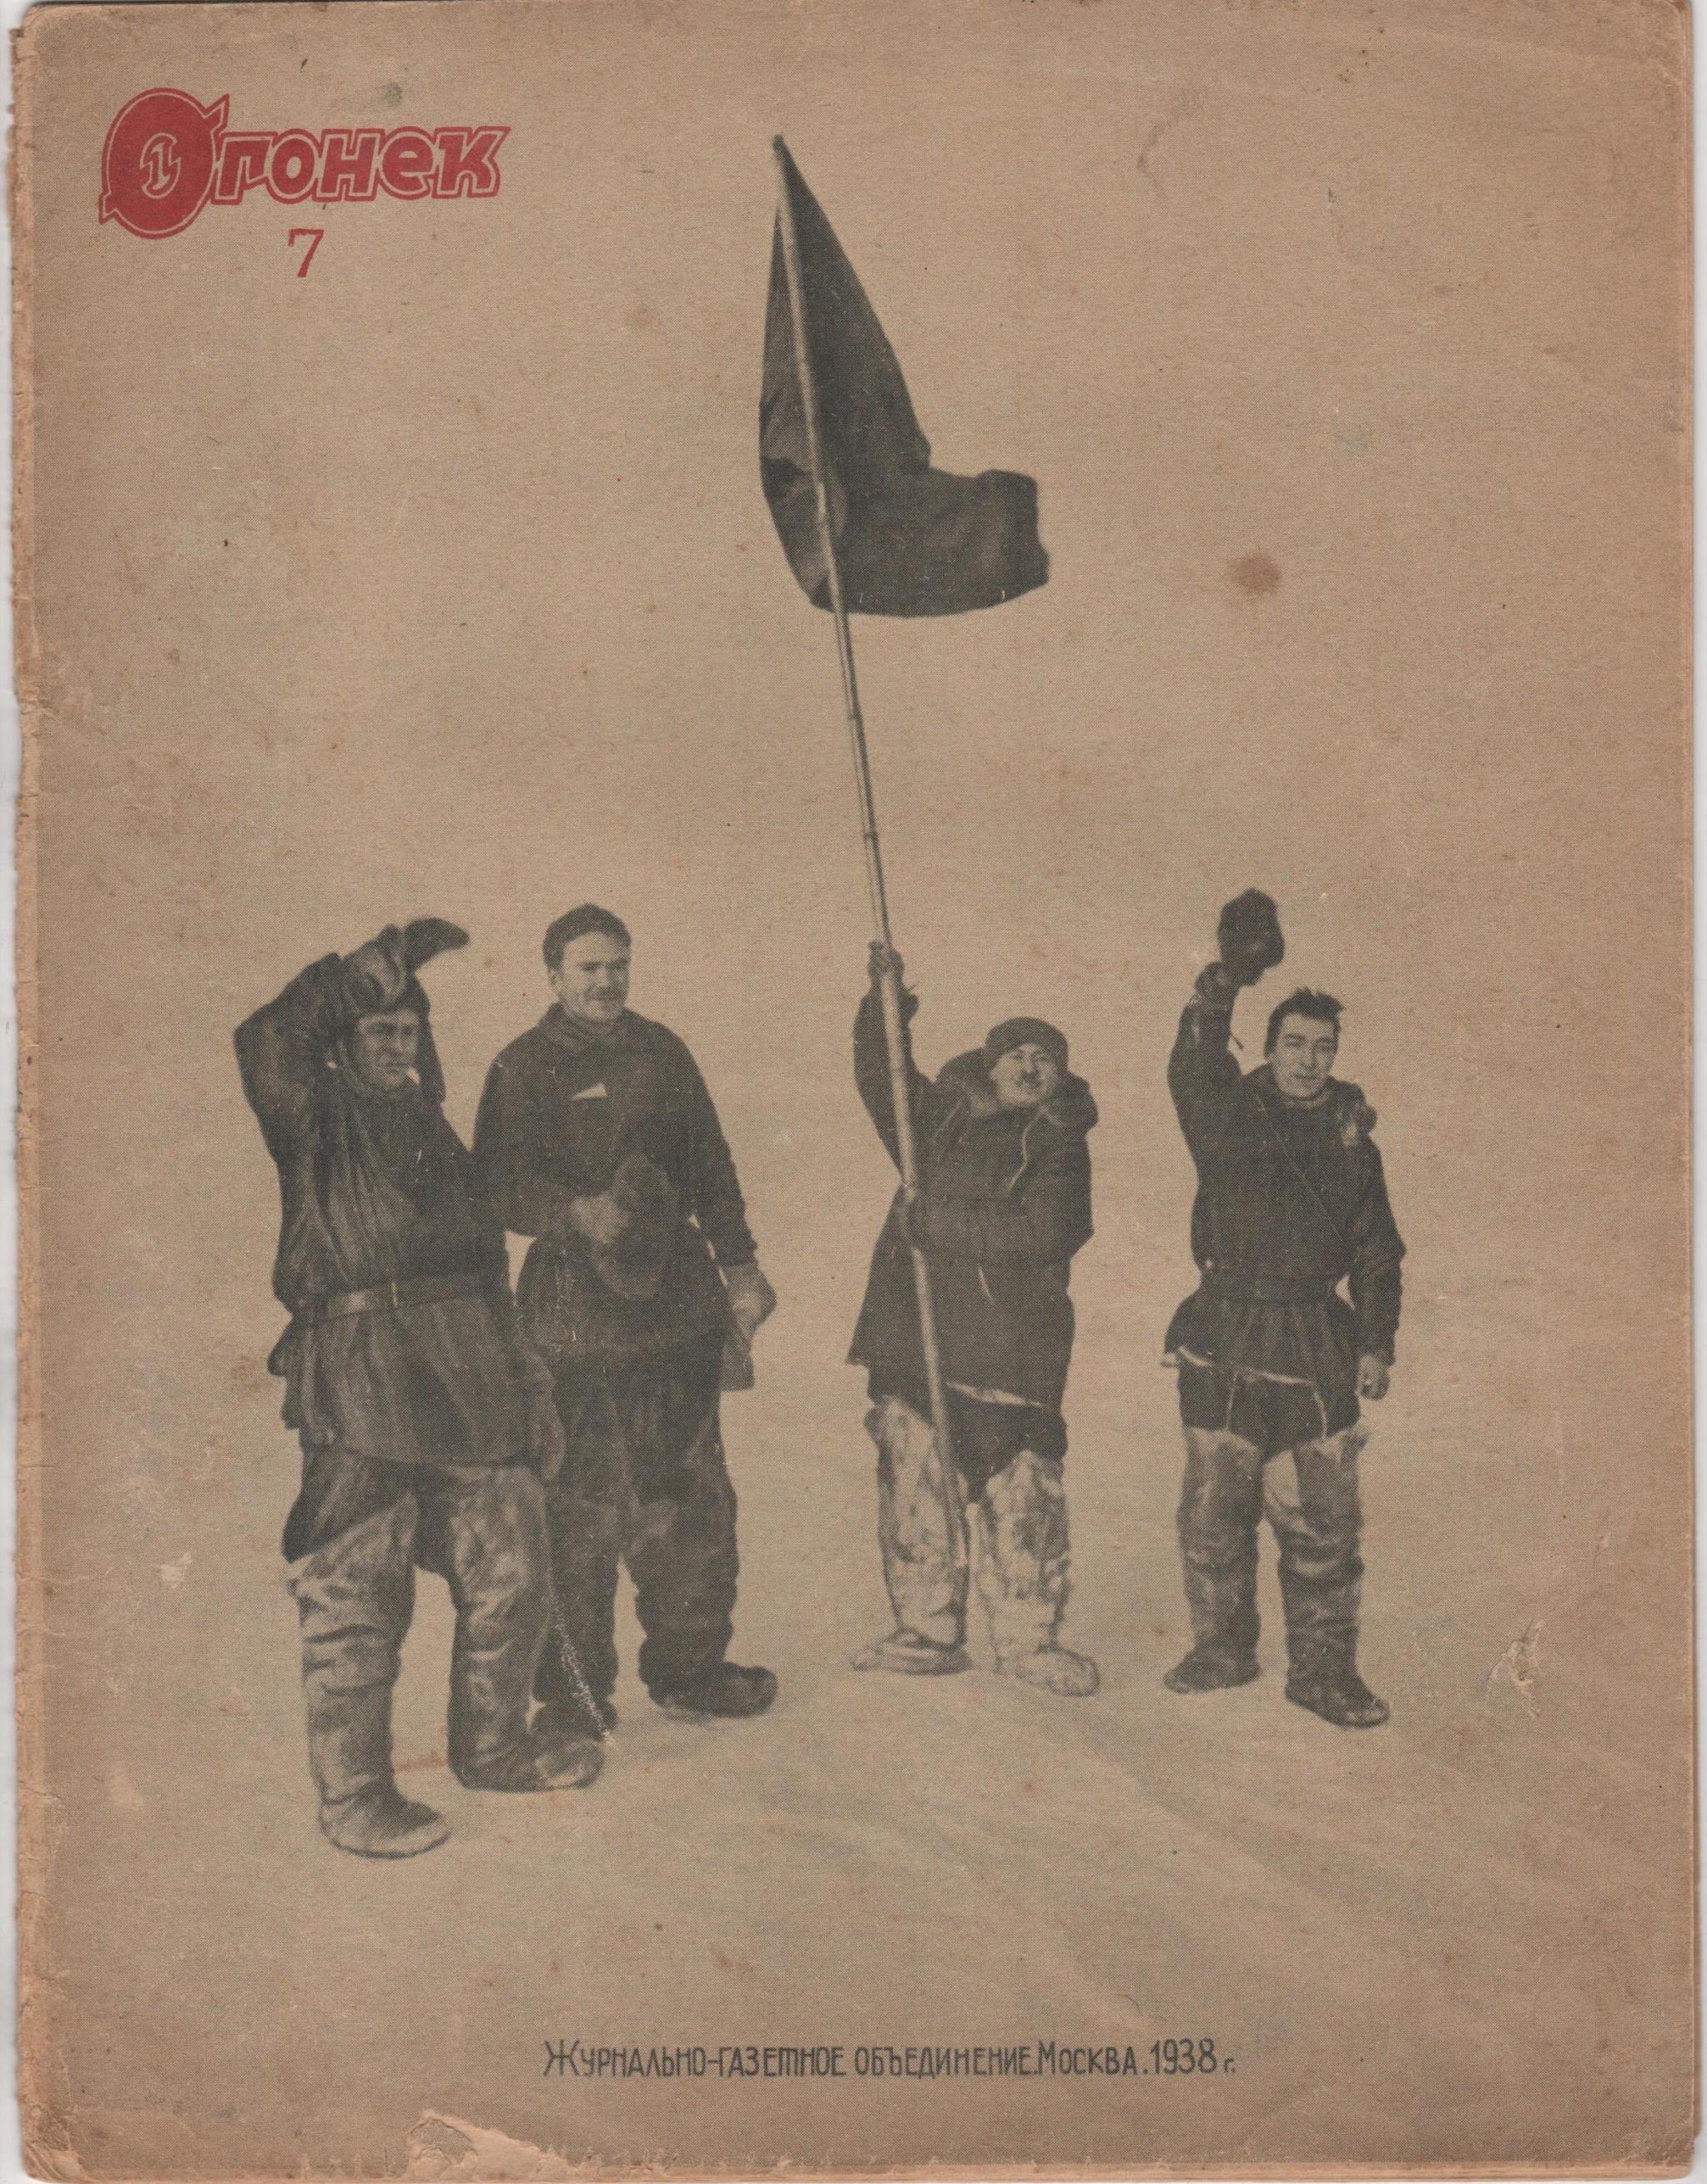 	Журнал "Огонек". 1938. № 7 (березень)